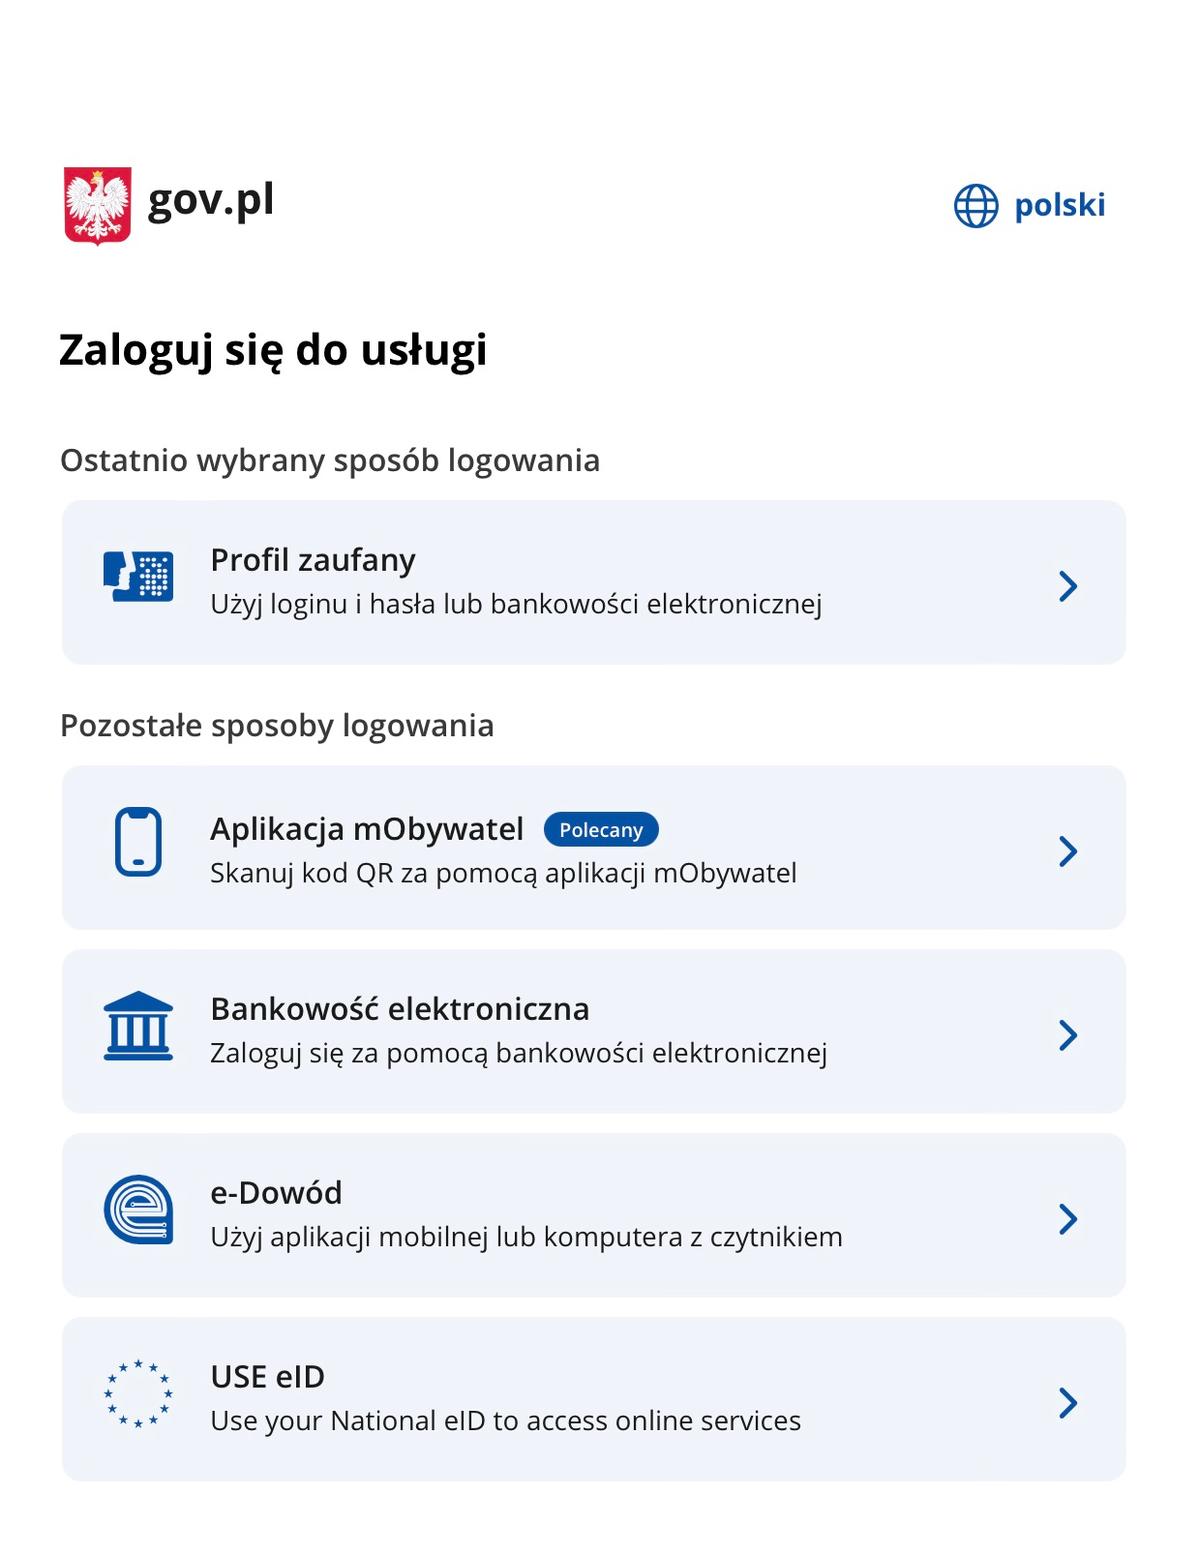 gov.pl lista sposobów logowania 